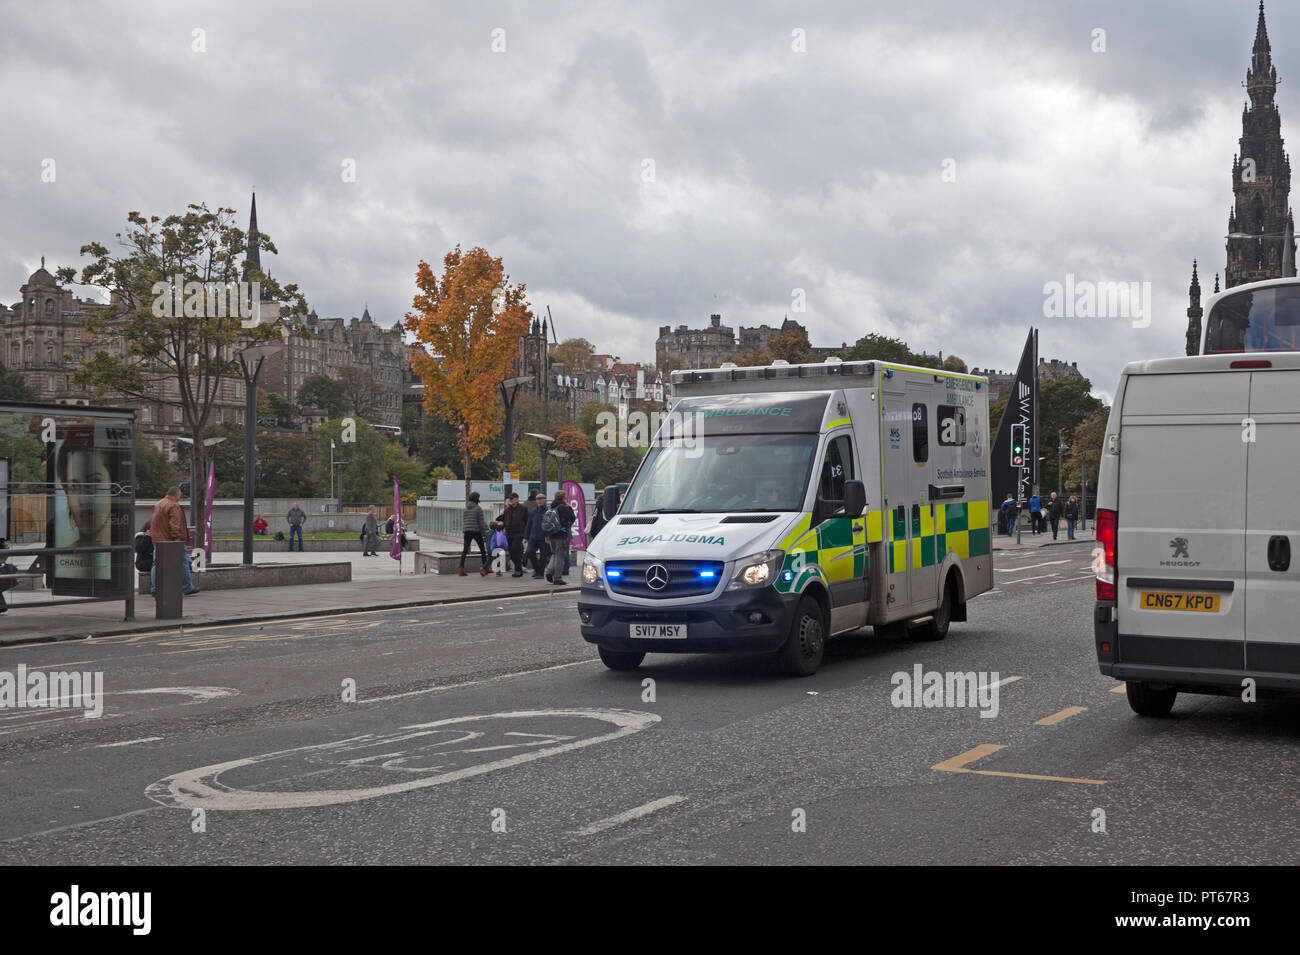 Ambulance avec feux bleus excès de vitesse dans la zone 20 sur l'intervention d'urgence, Princes Street, Edinburgh, Ecosse, Royaume-Uni Banque D'Images